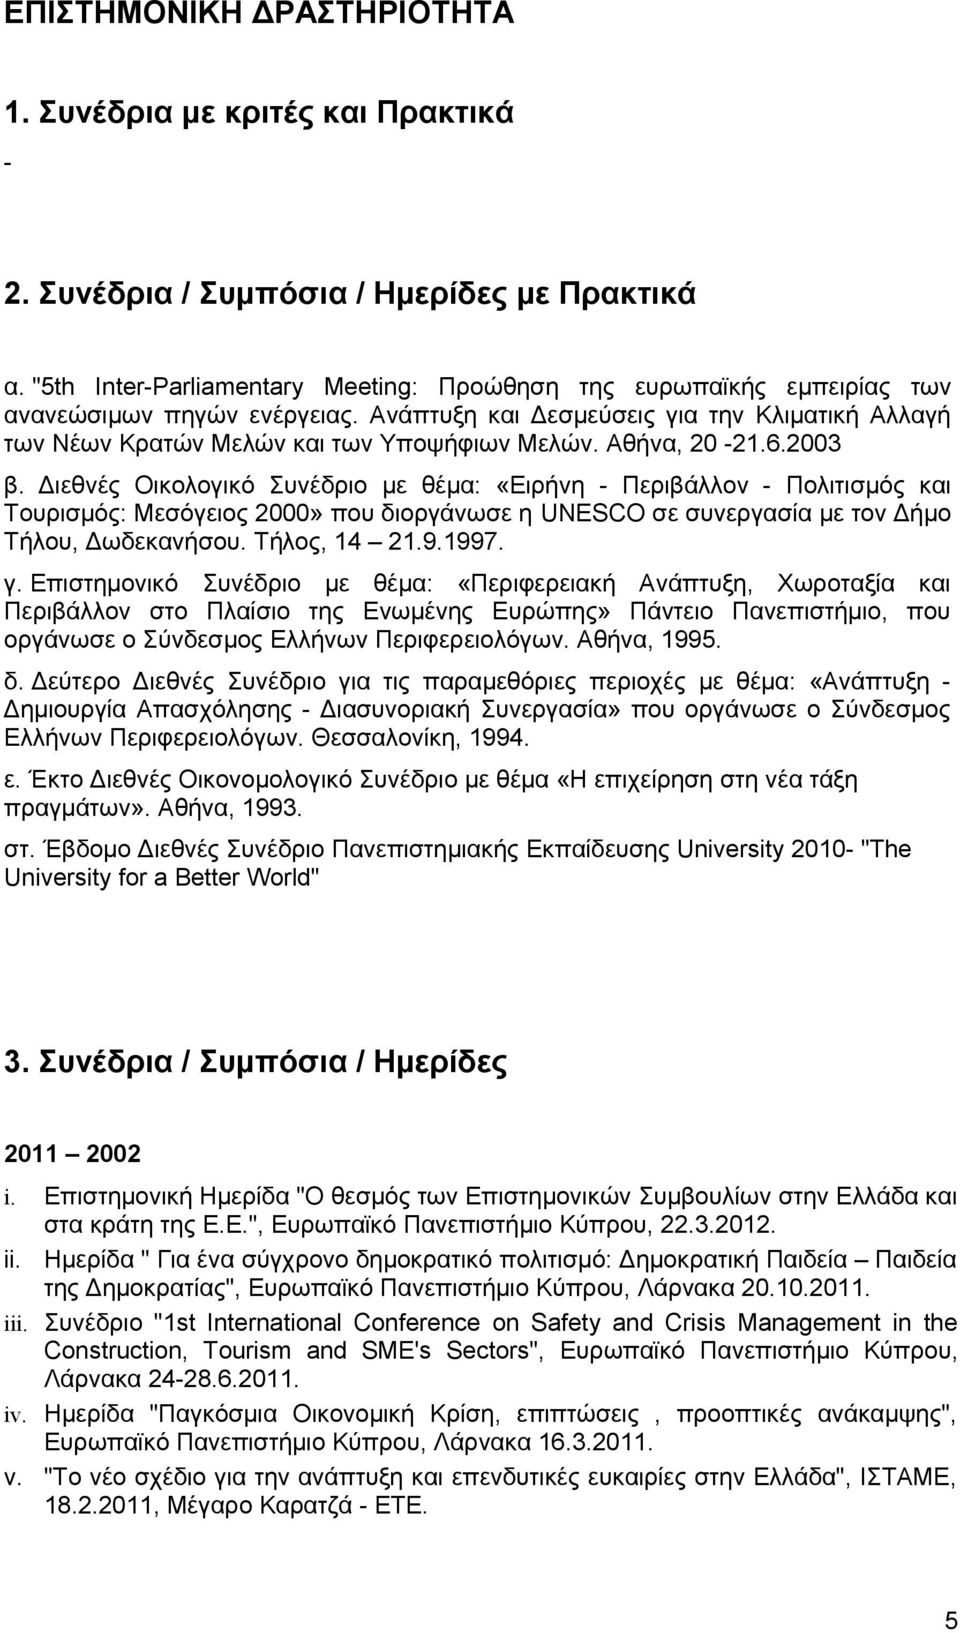 Αθήνα, 20-21.6.2003 β. Διεθνές Οικολογικό Συνέδριο με θέμα: «Ειρήνη - Περιβάλλον - Πολιτισμός και Τουρισμός: Μεσόγειος 2000» που διοργάνωσε η UNESCO σε συνεργασία με τον Δήμο Τήλου, Δωδεκανήσου.